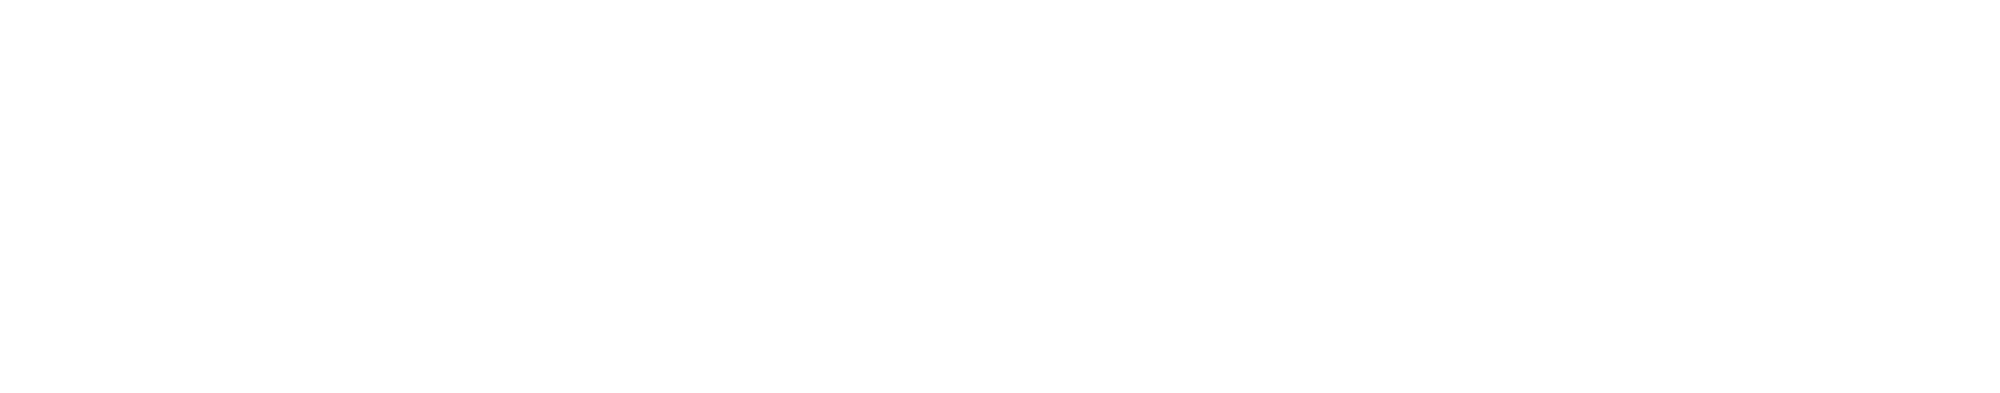 The Footwears